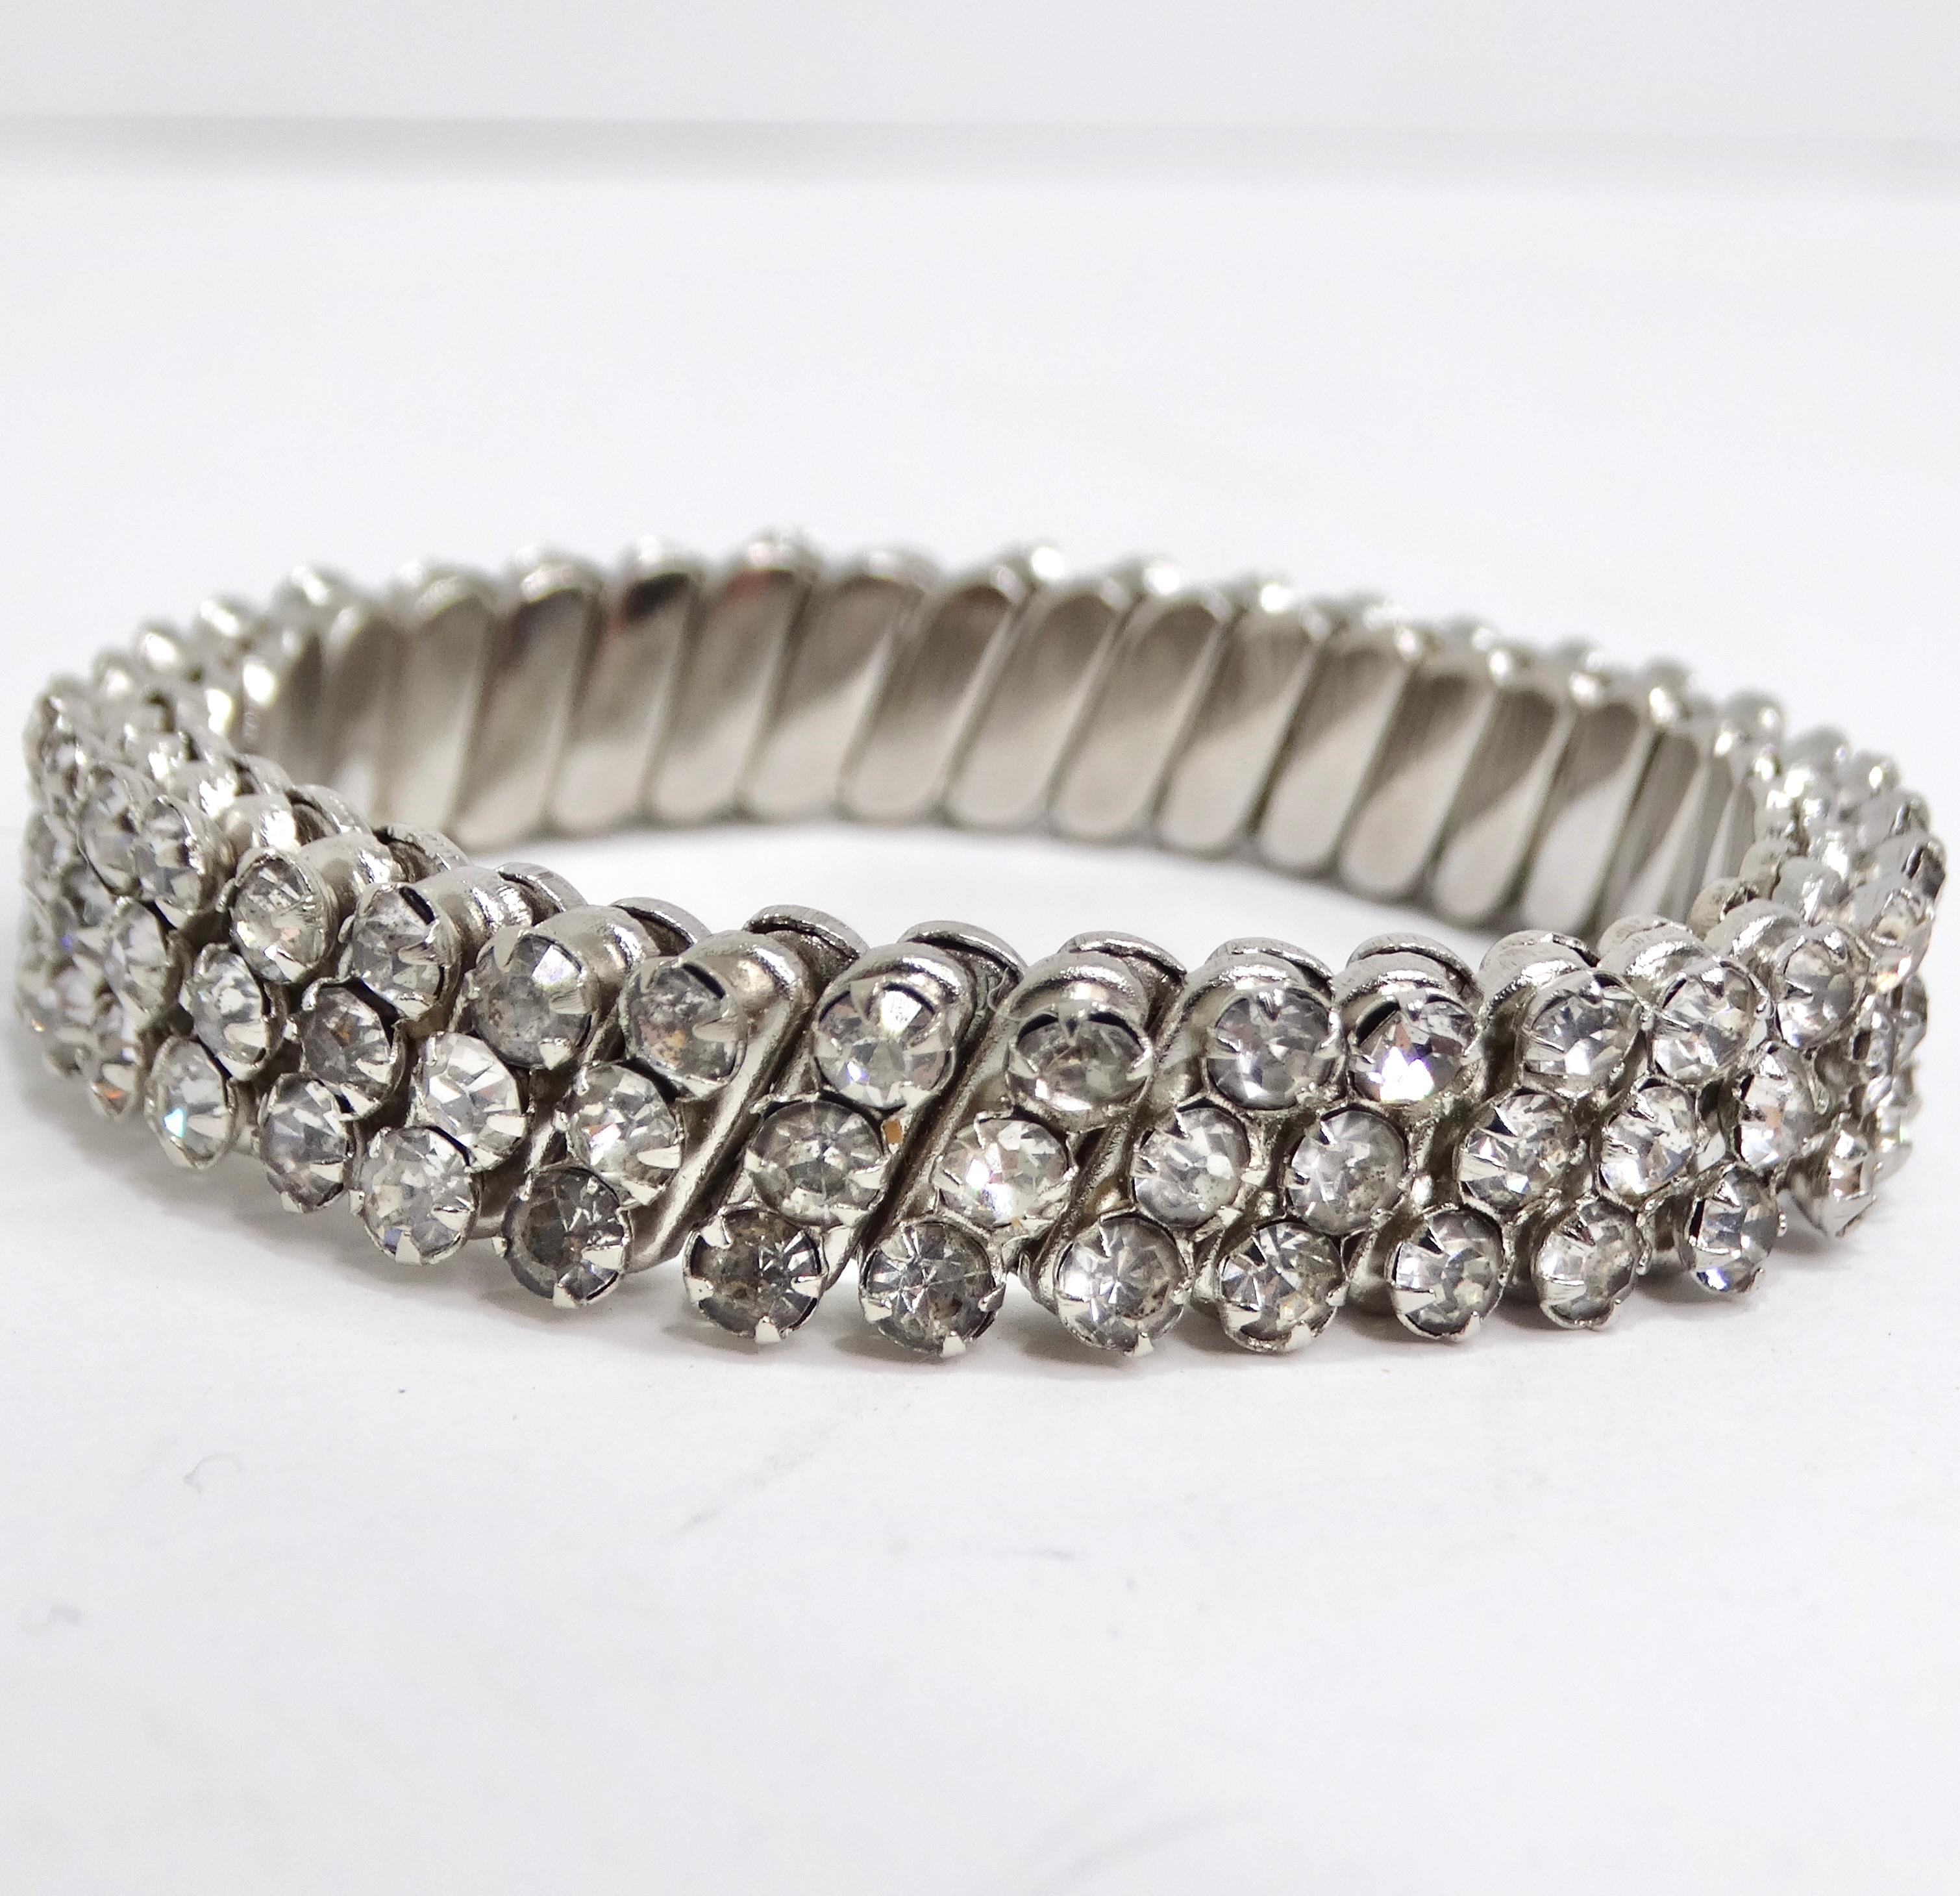 Erhöhen Sie Ihren Stil mit dem 1980s Swarovski Crystal Adjustable Bracelet, einem klassischen Schmuckstück mit drei Reihen runder, klarer Swarovski-Kristalle, die von einer Silberbeschichtung umgeben sind. Das Design dieses Armbands ist ein Beweis